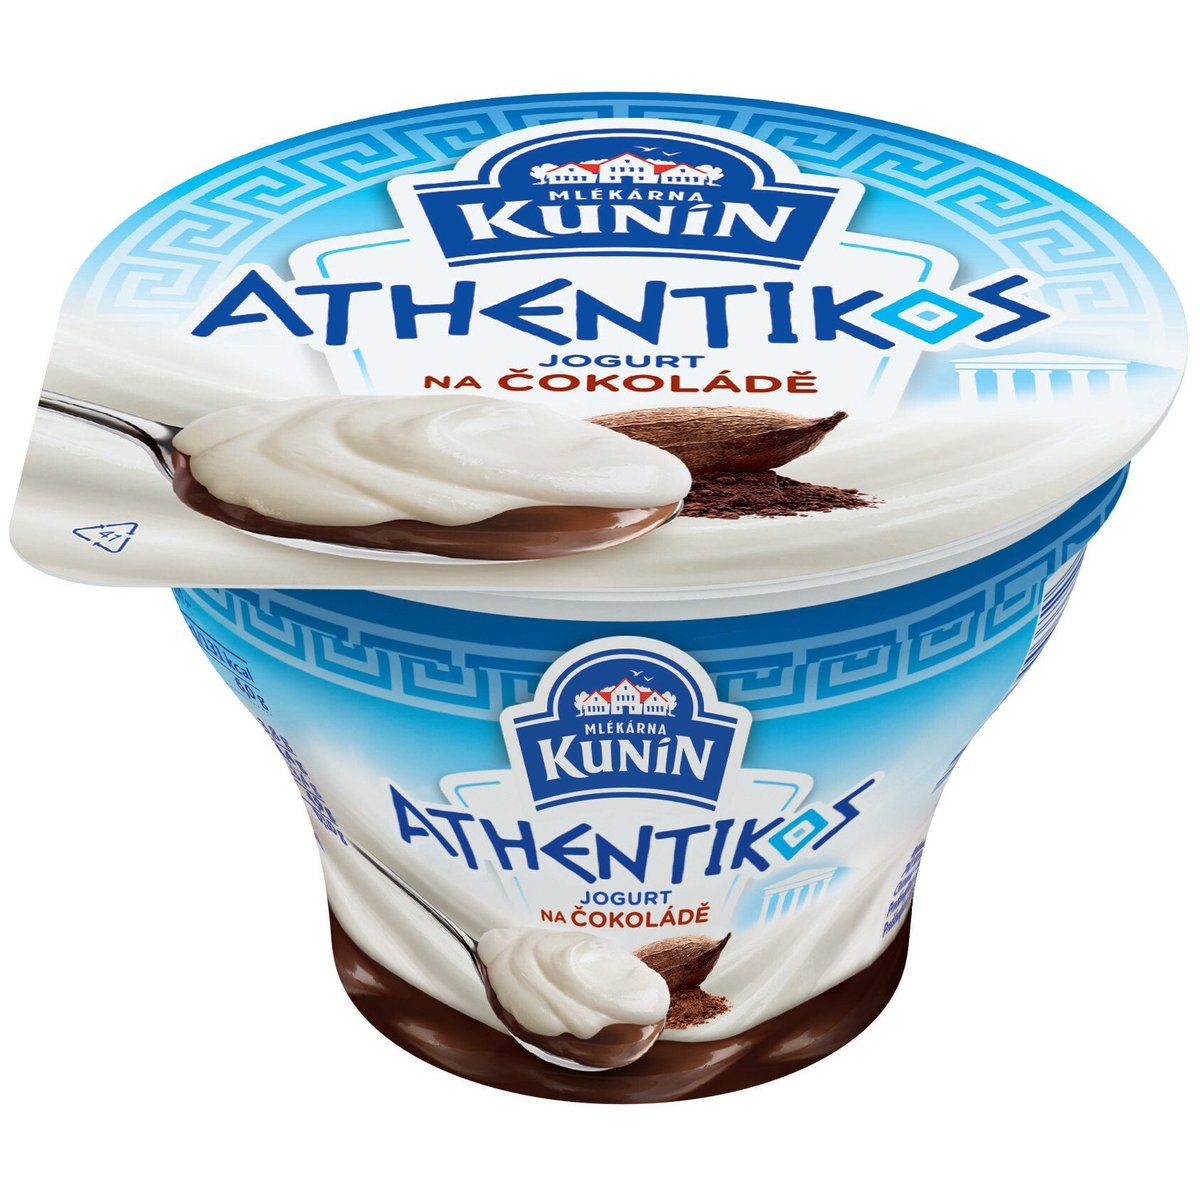 Mlékárna Kunín Athentikos jogurt na čokoládě